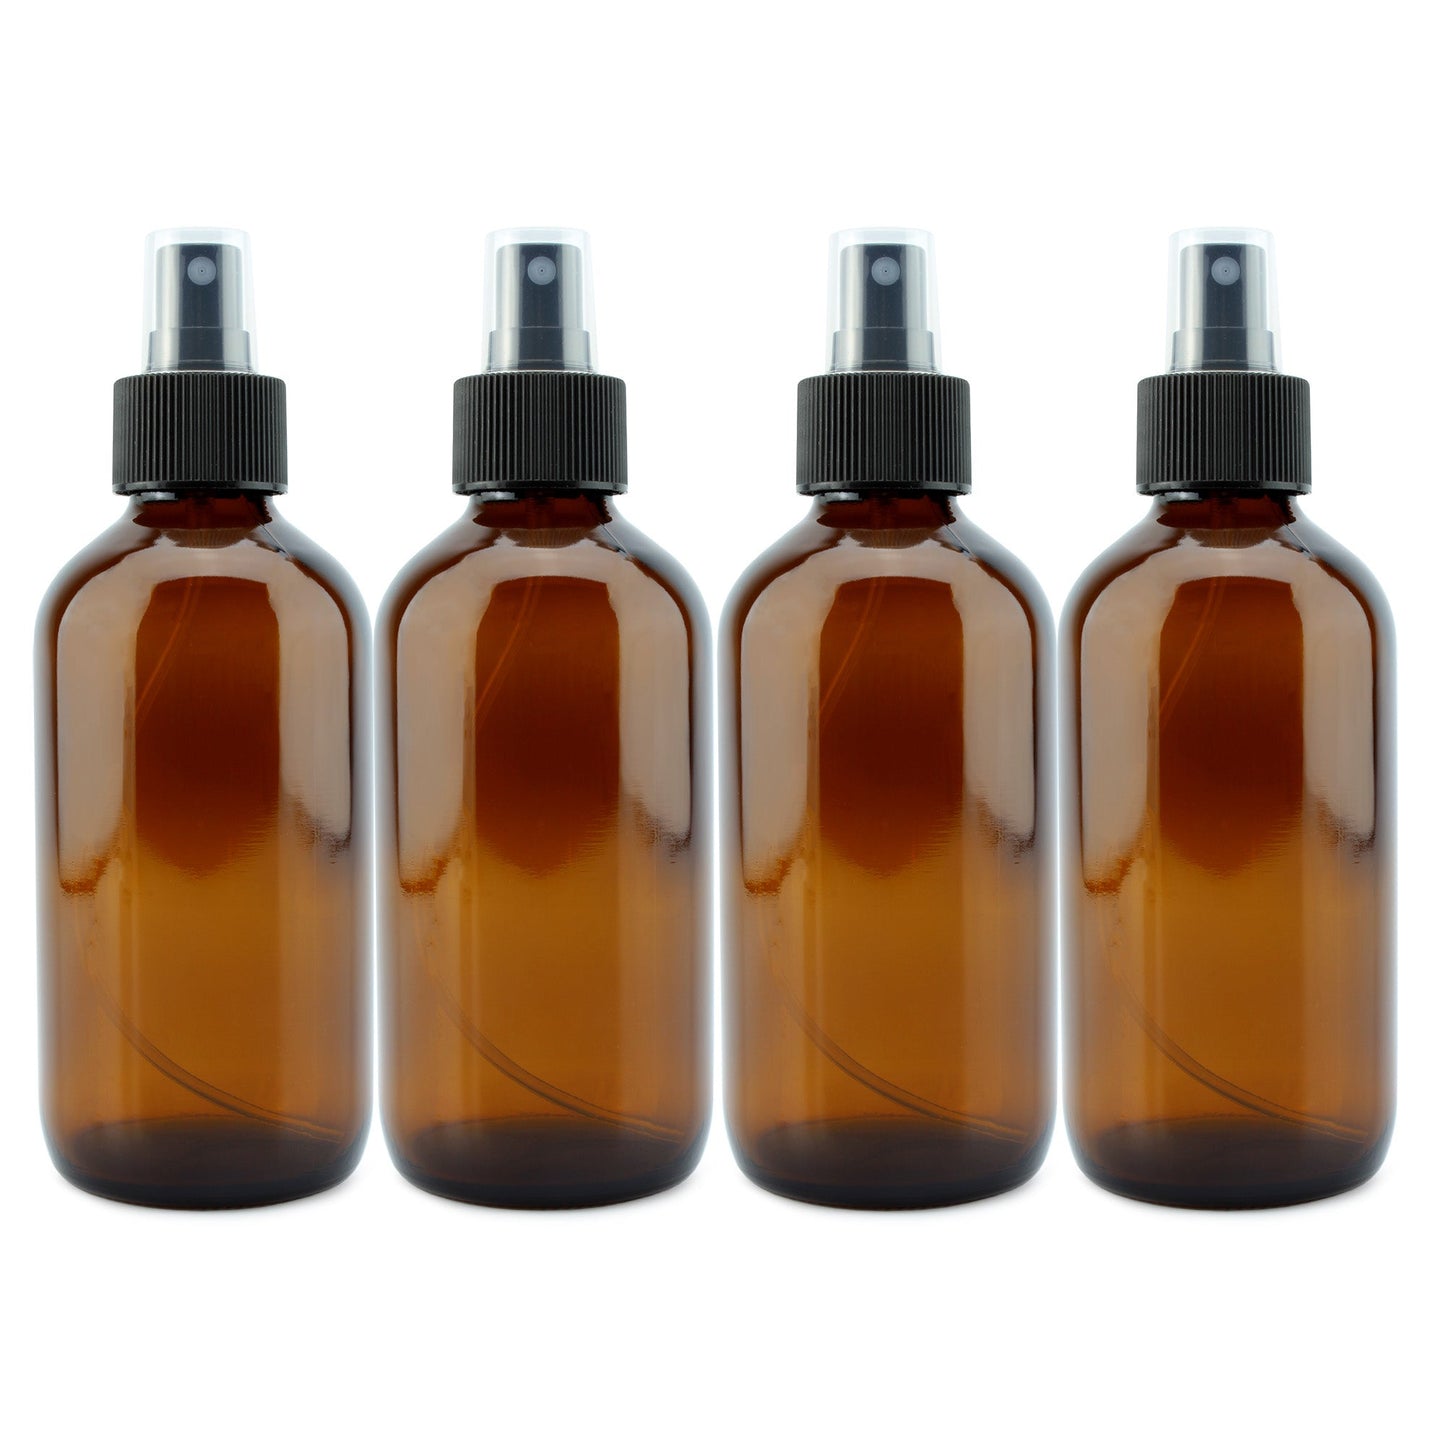 8oz Amber Glass Fine Mist Spray Bottles (4-Pack) - sh1578cb0tbs